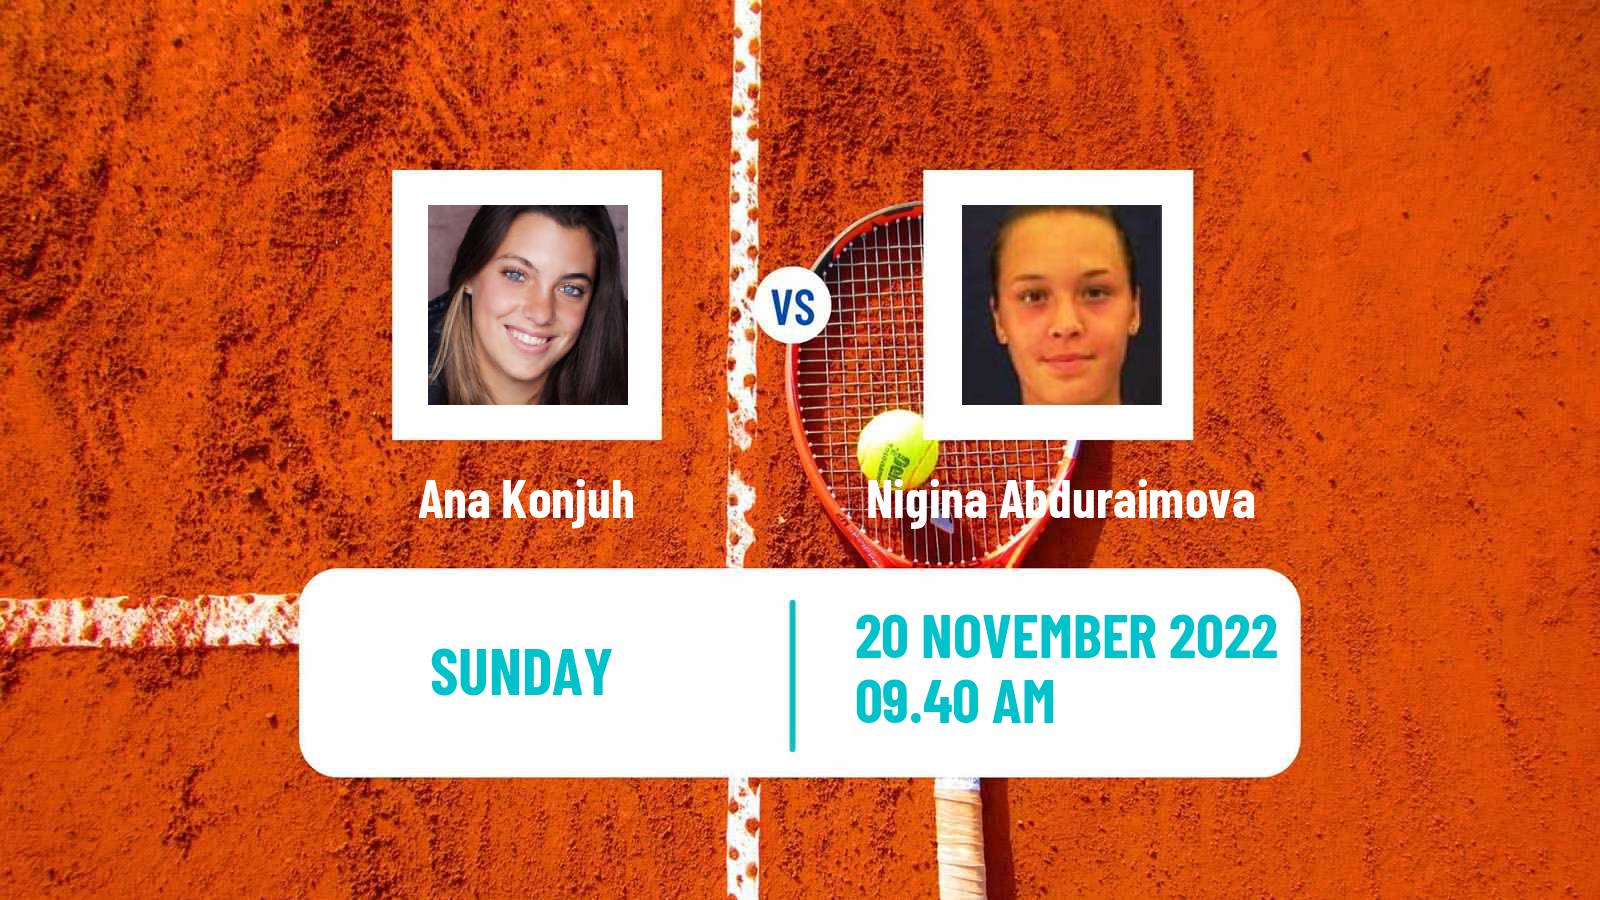 Tennis ITF Tournaments Ana Konjuh - Nigina Abduraimova